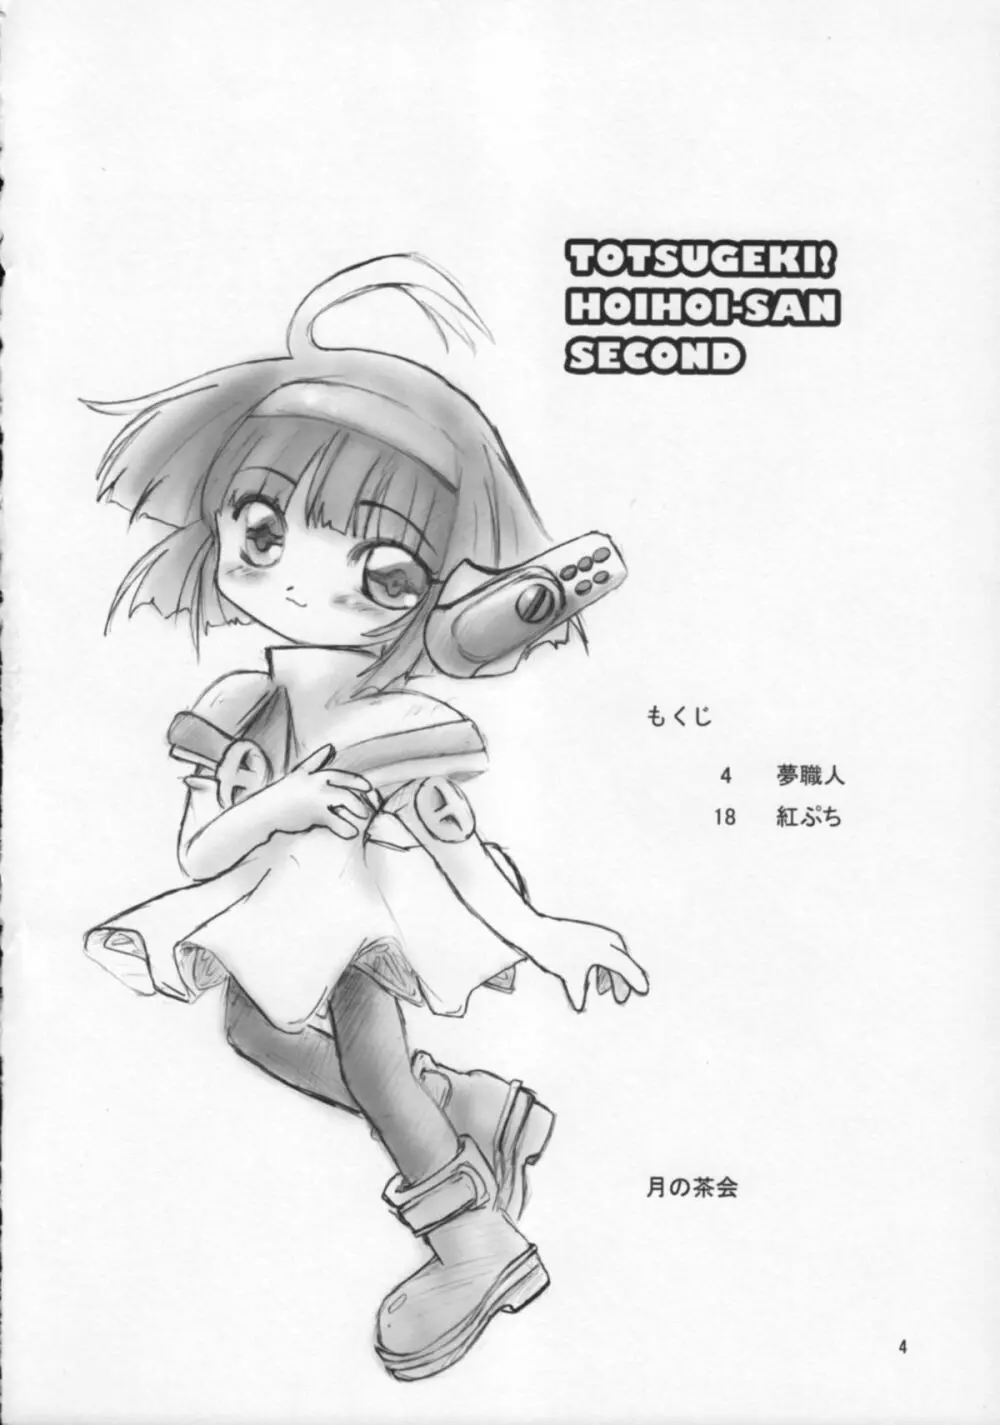 TOTSUGEKI! HOIHOI-SAN SECOND 3ページ